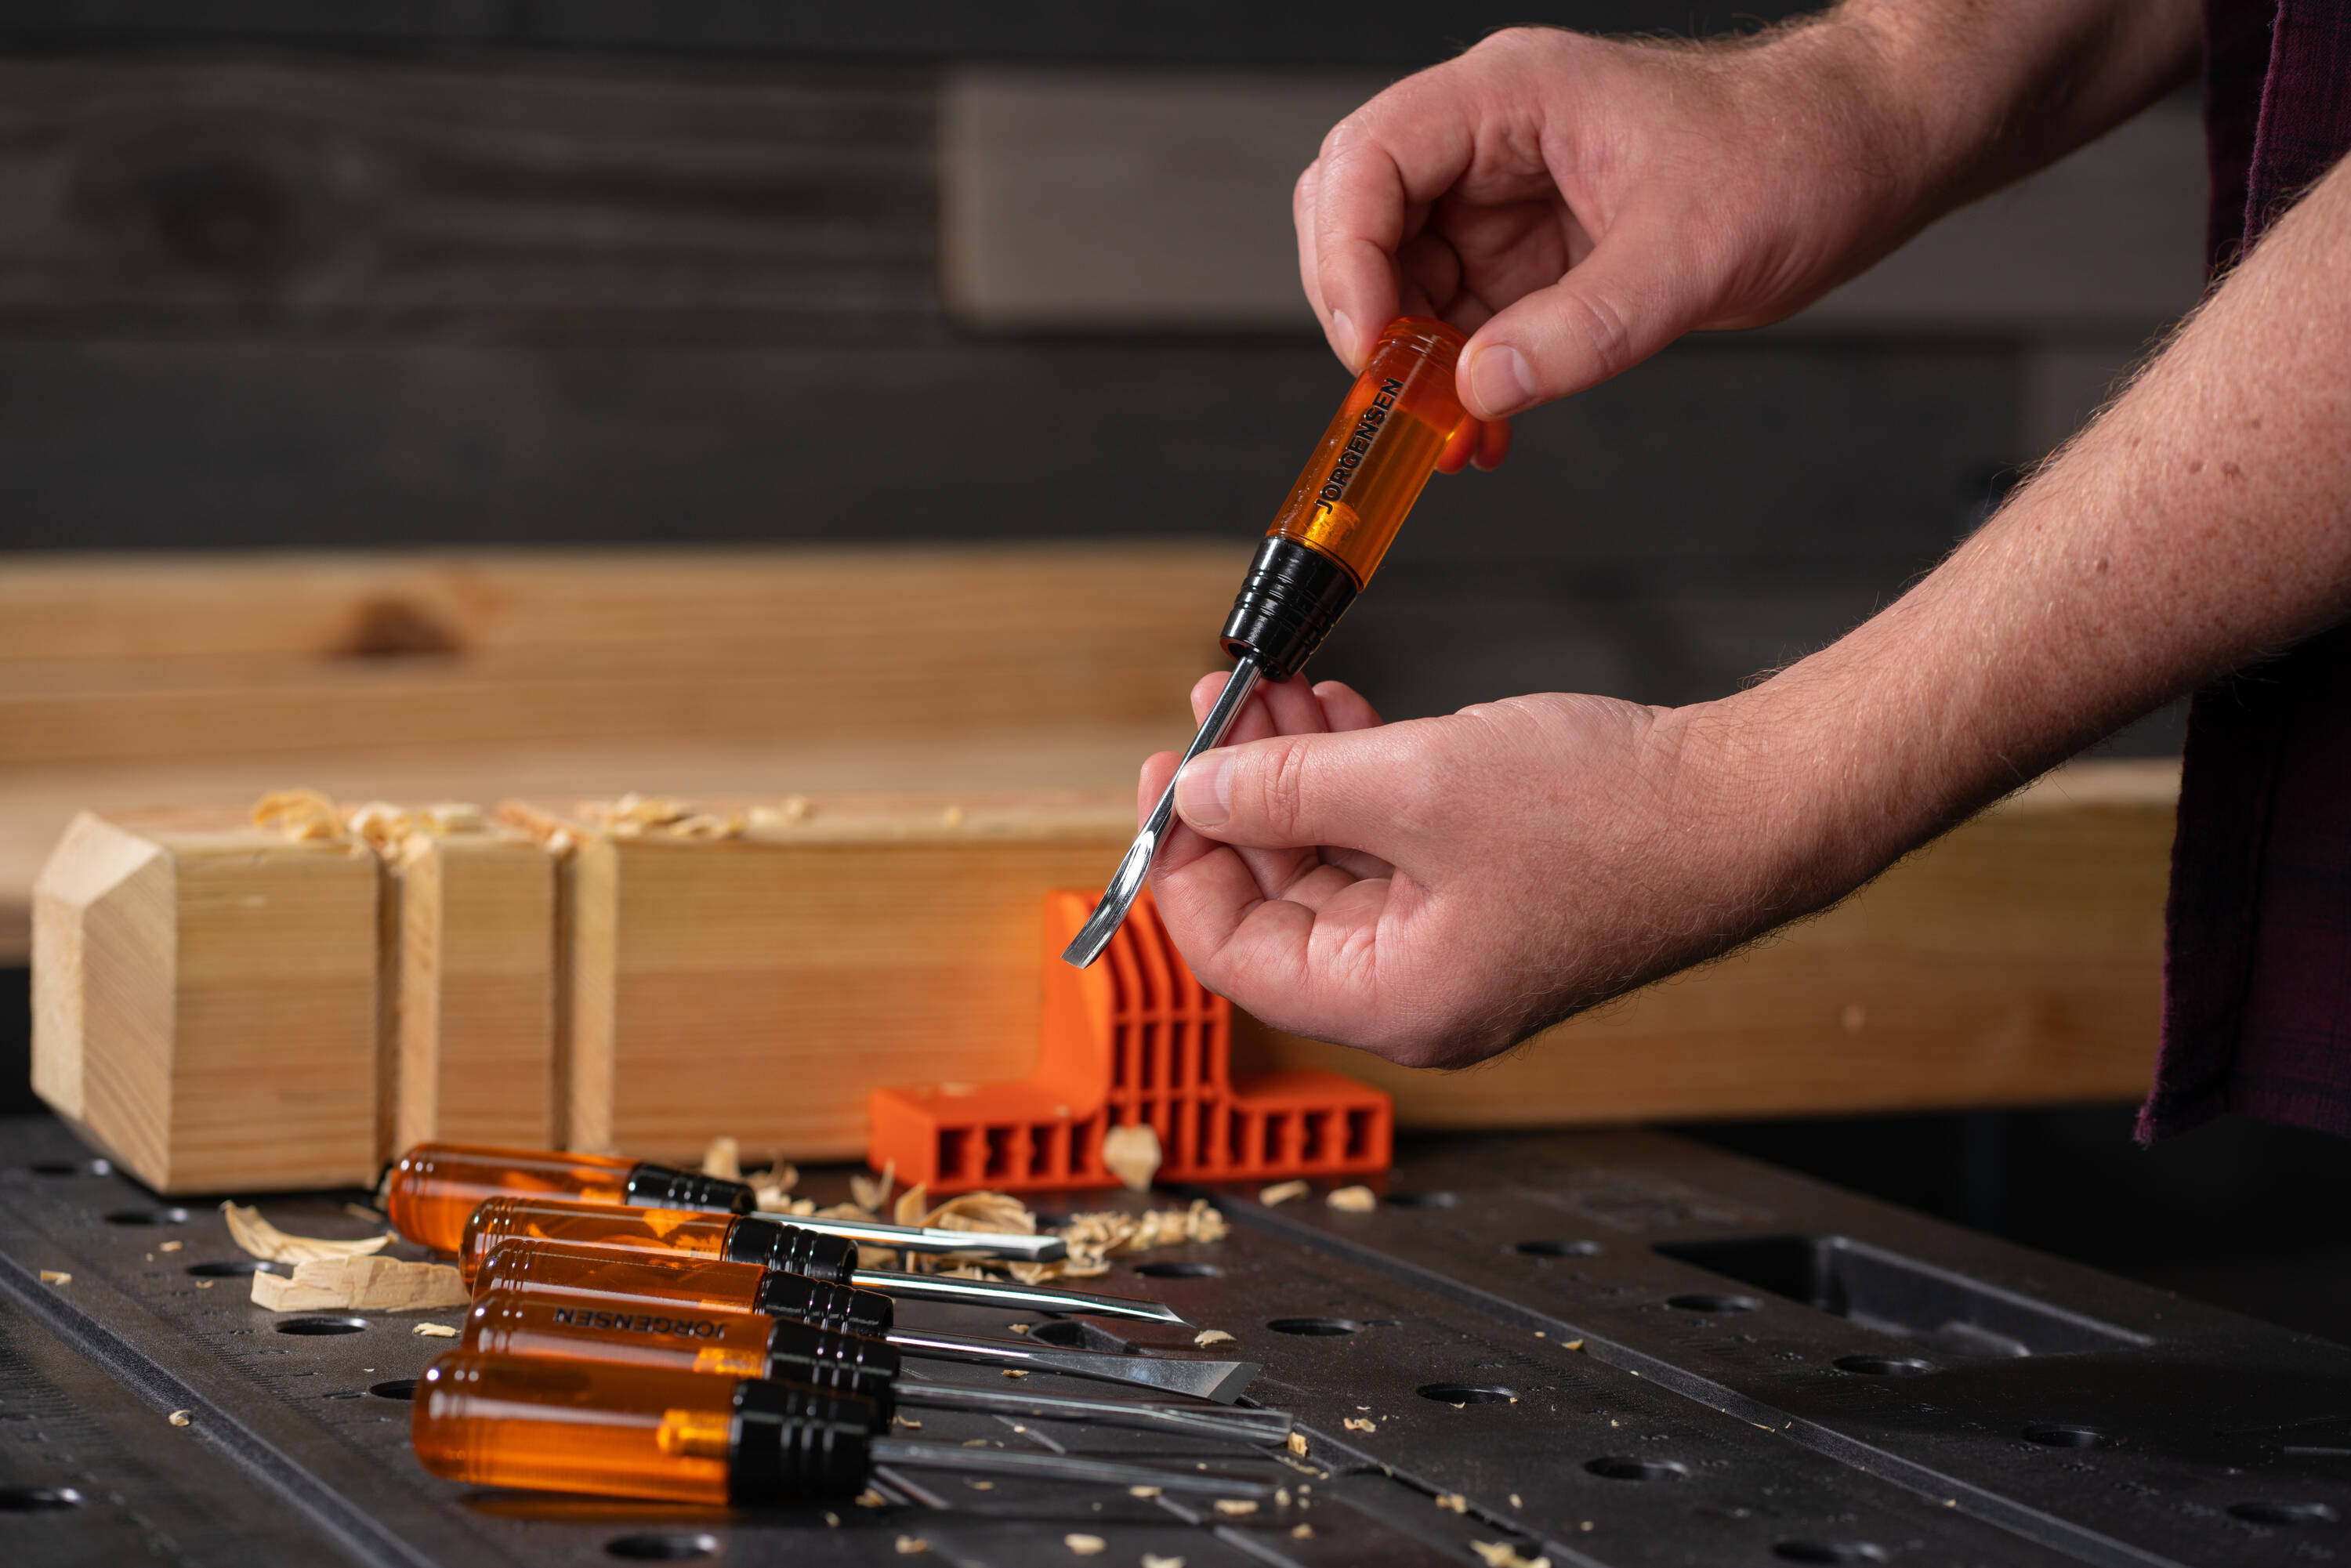 Kobalt Side Strike Chisel Set 3-Pack Woodworking Chisels Set